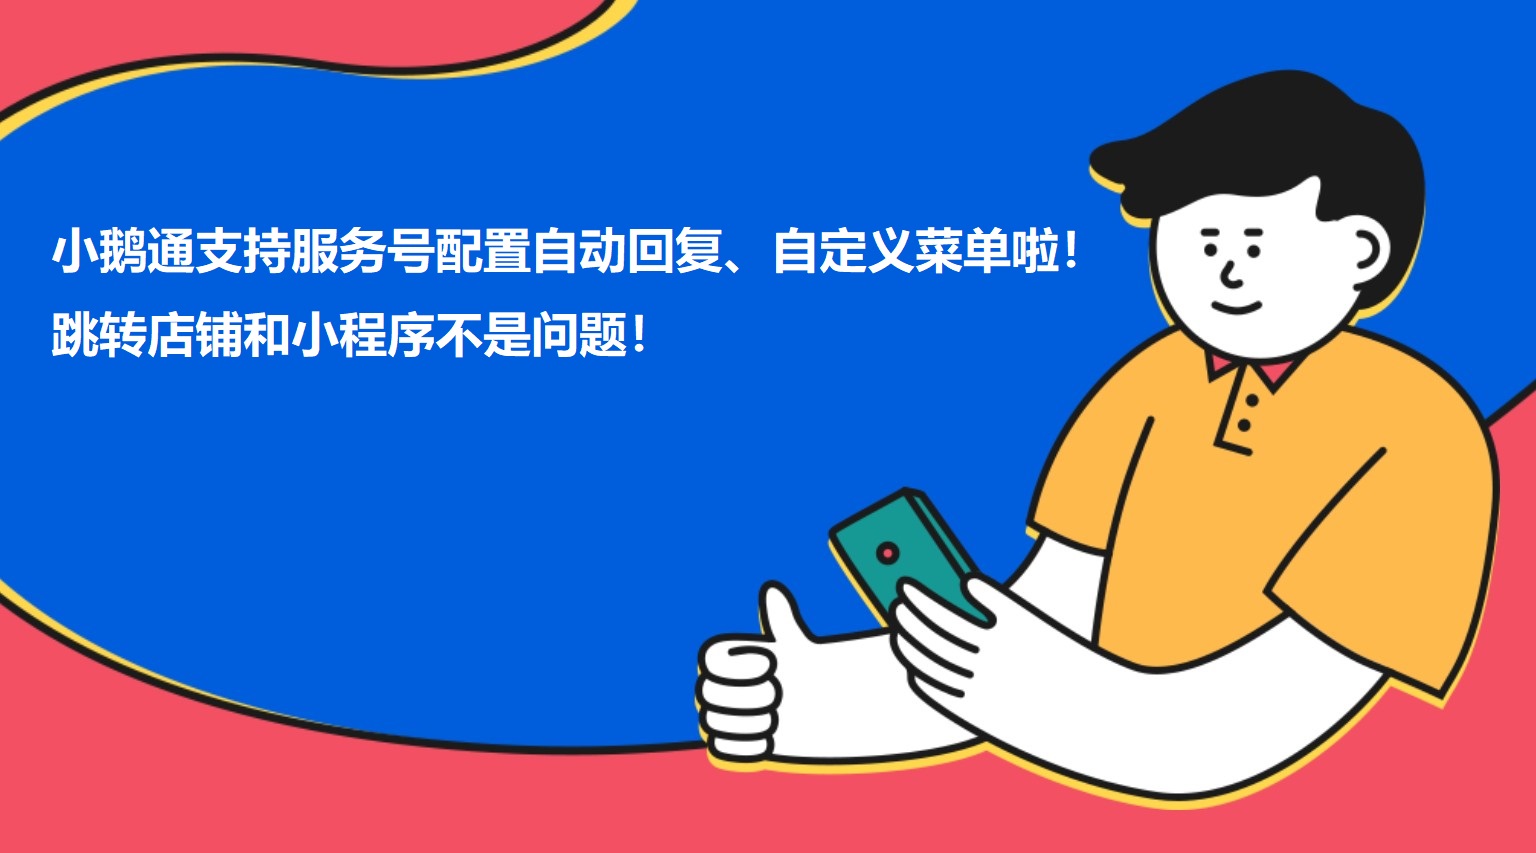 江苏小鹅通支持服务号配置自动回复、自定义菜单啦！跳转店铺和小程序不是问题！